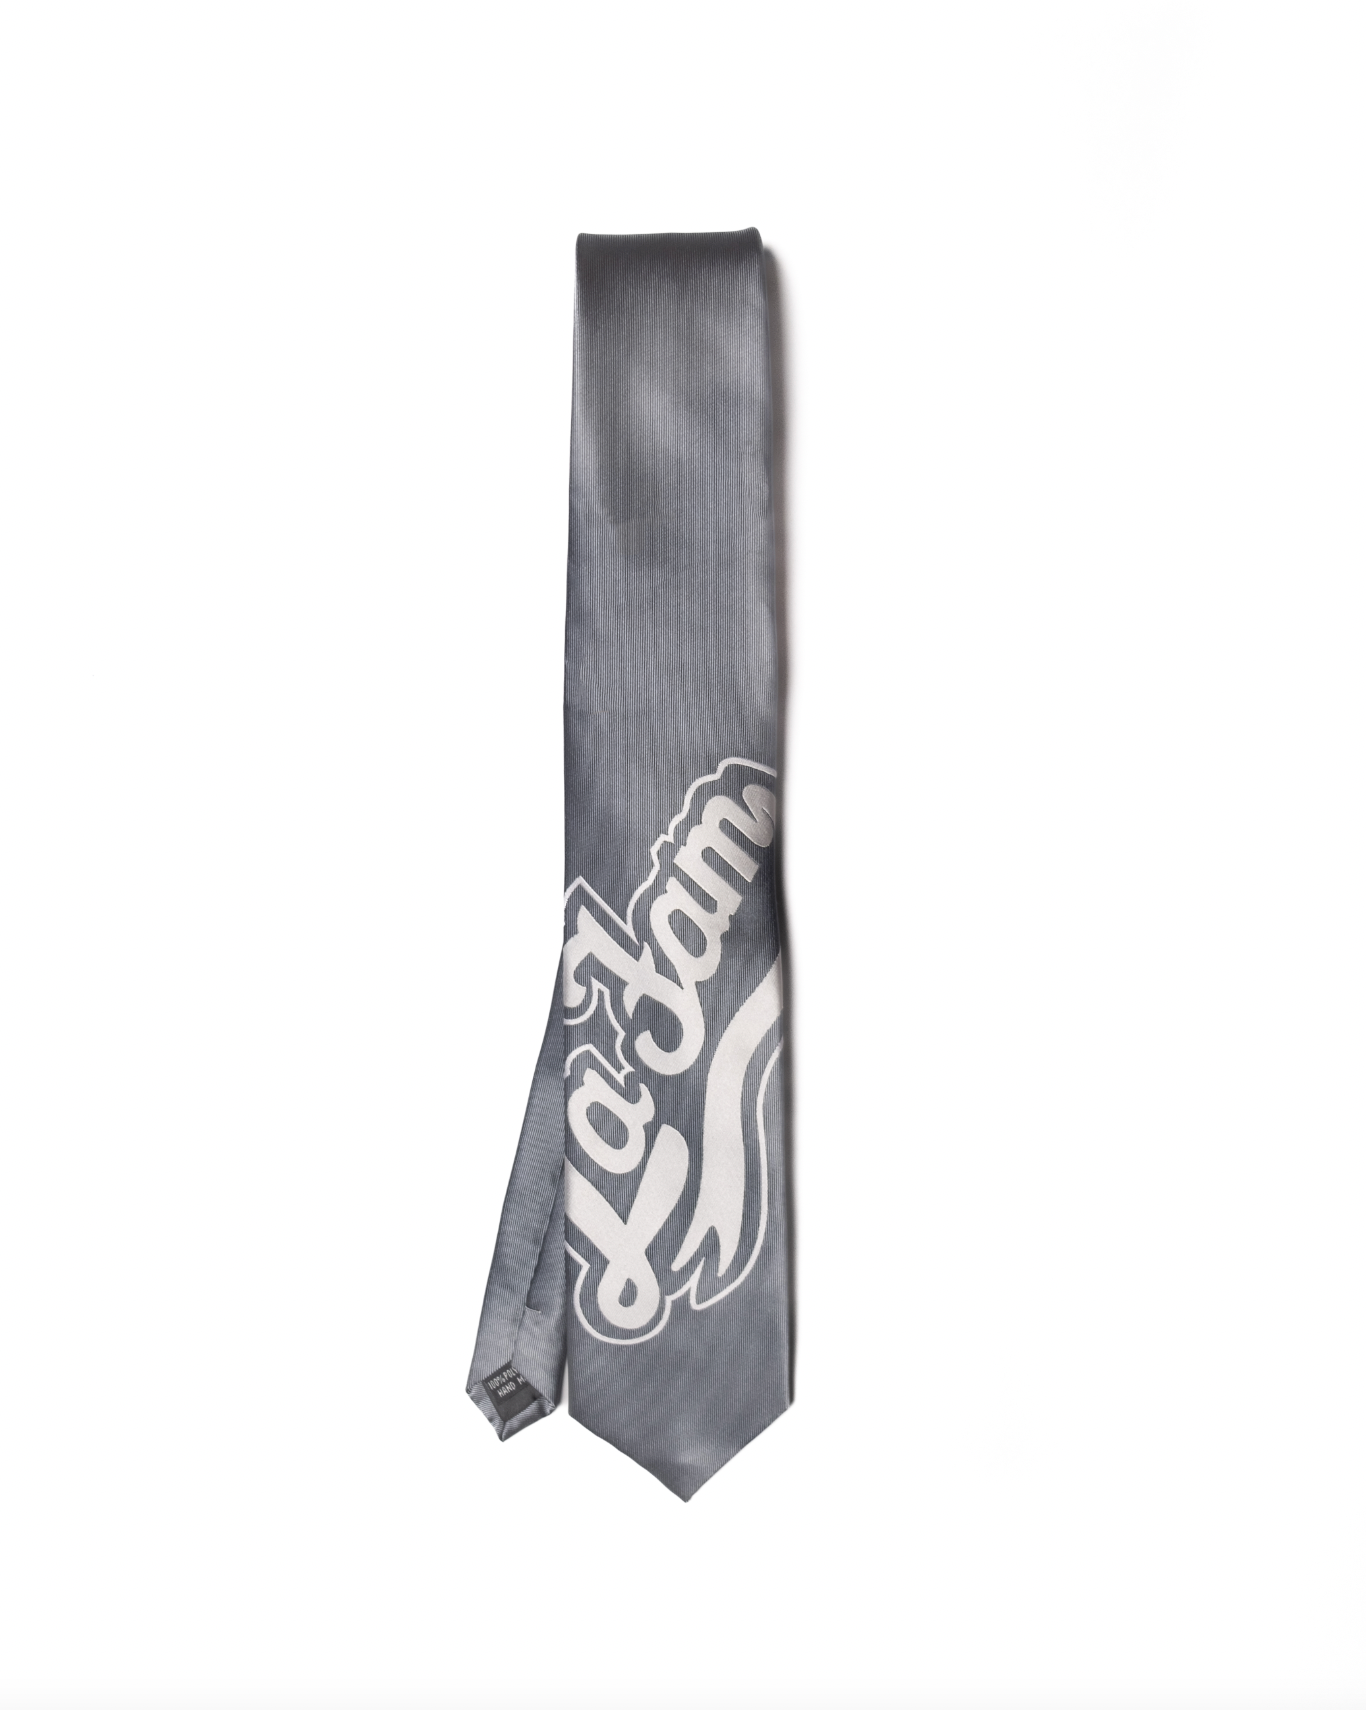 grey tie